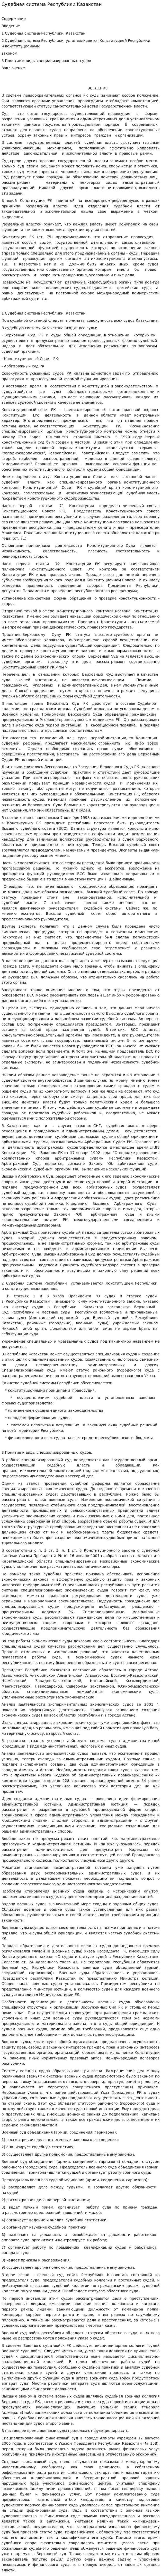 Судебная система Республики Казахстан. 3